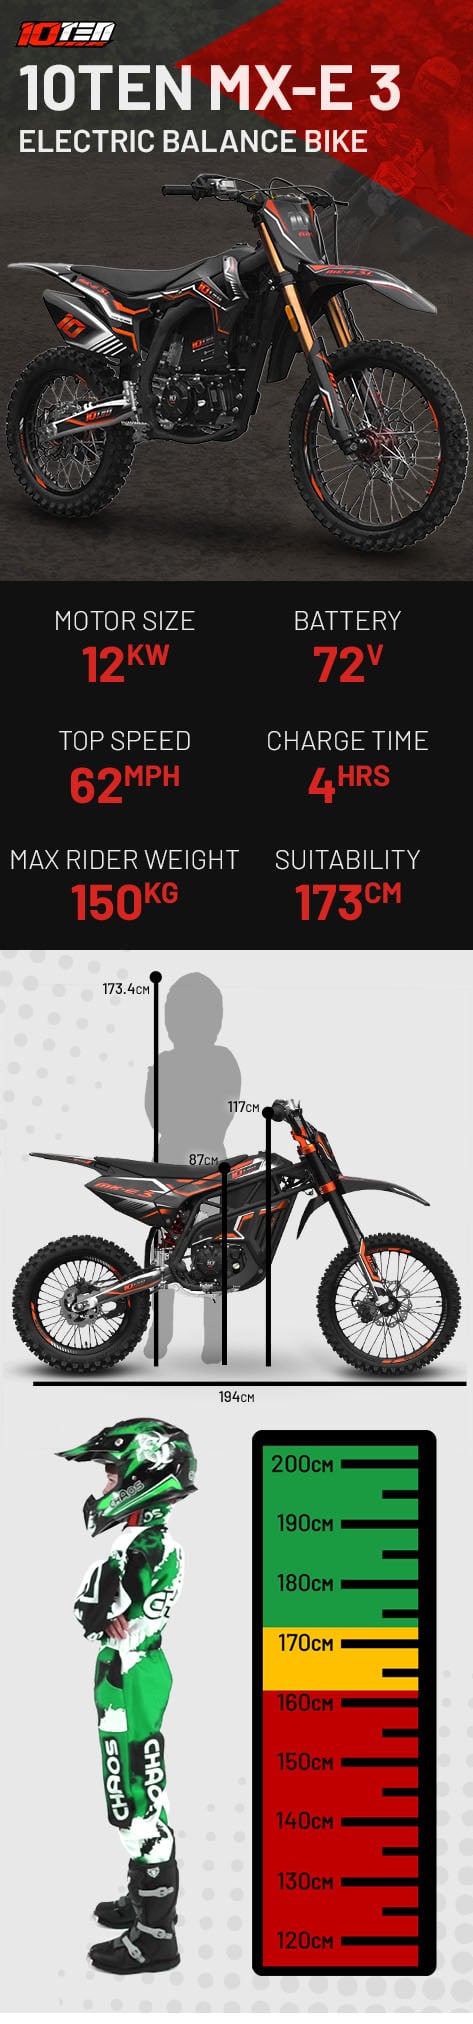 10Ten MX-E 3 19/16 50AH 12kw 87cm Electric MX Dirt Bike